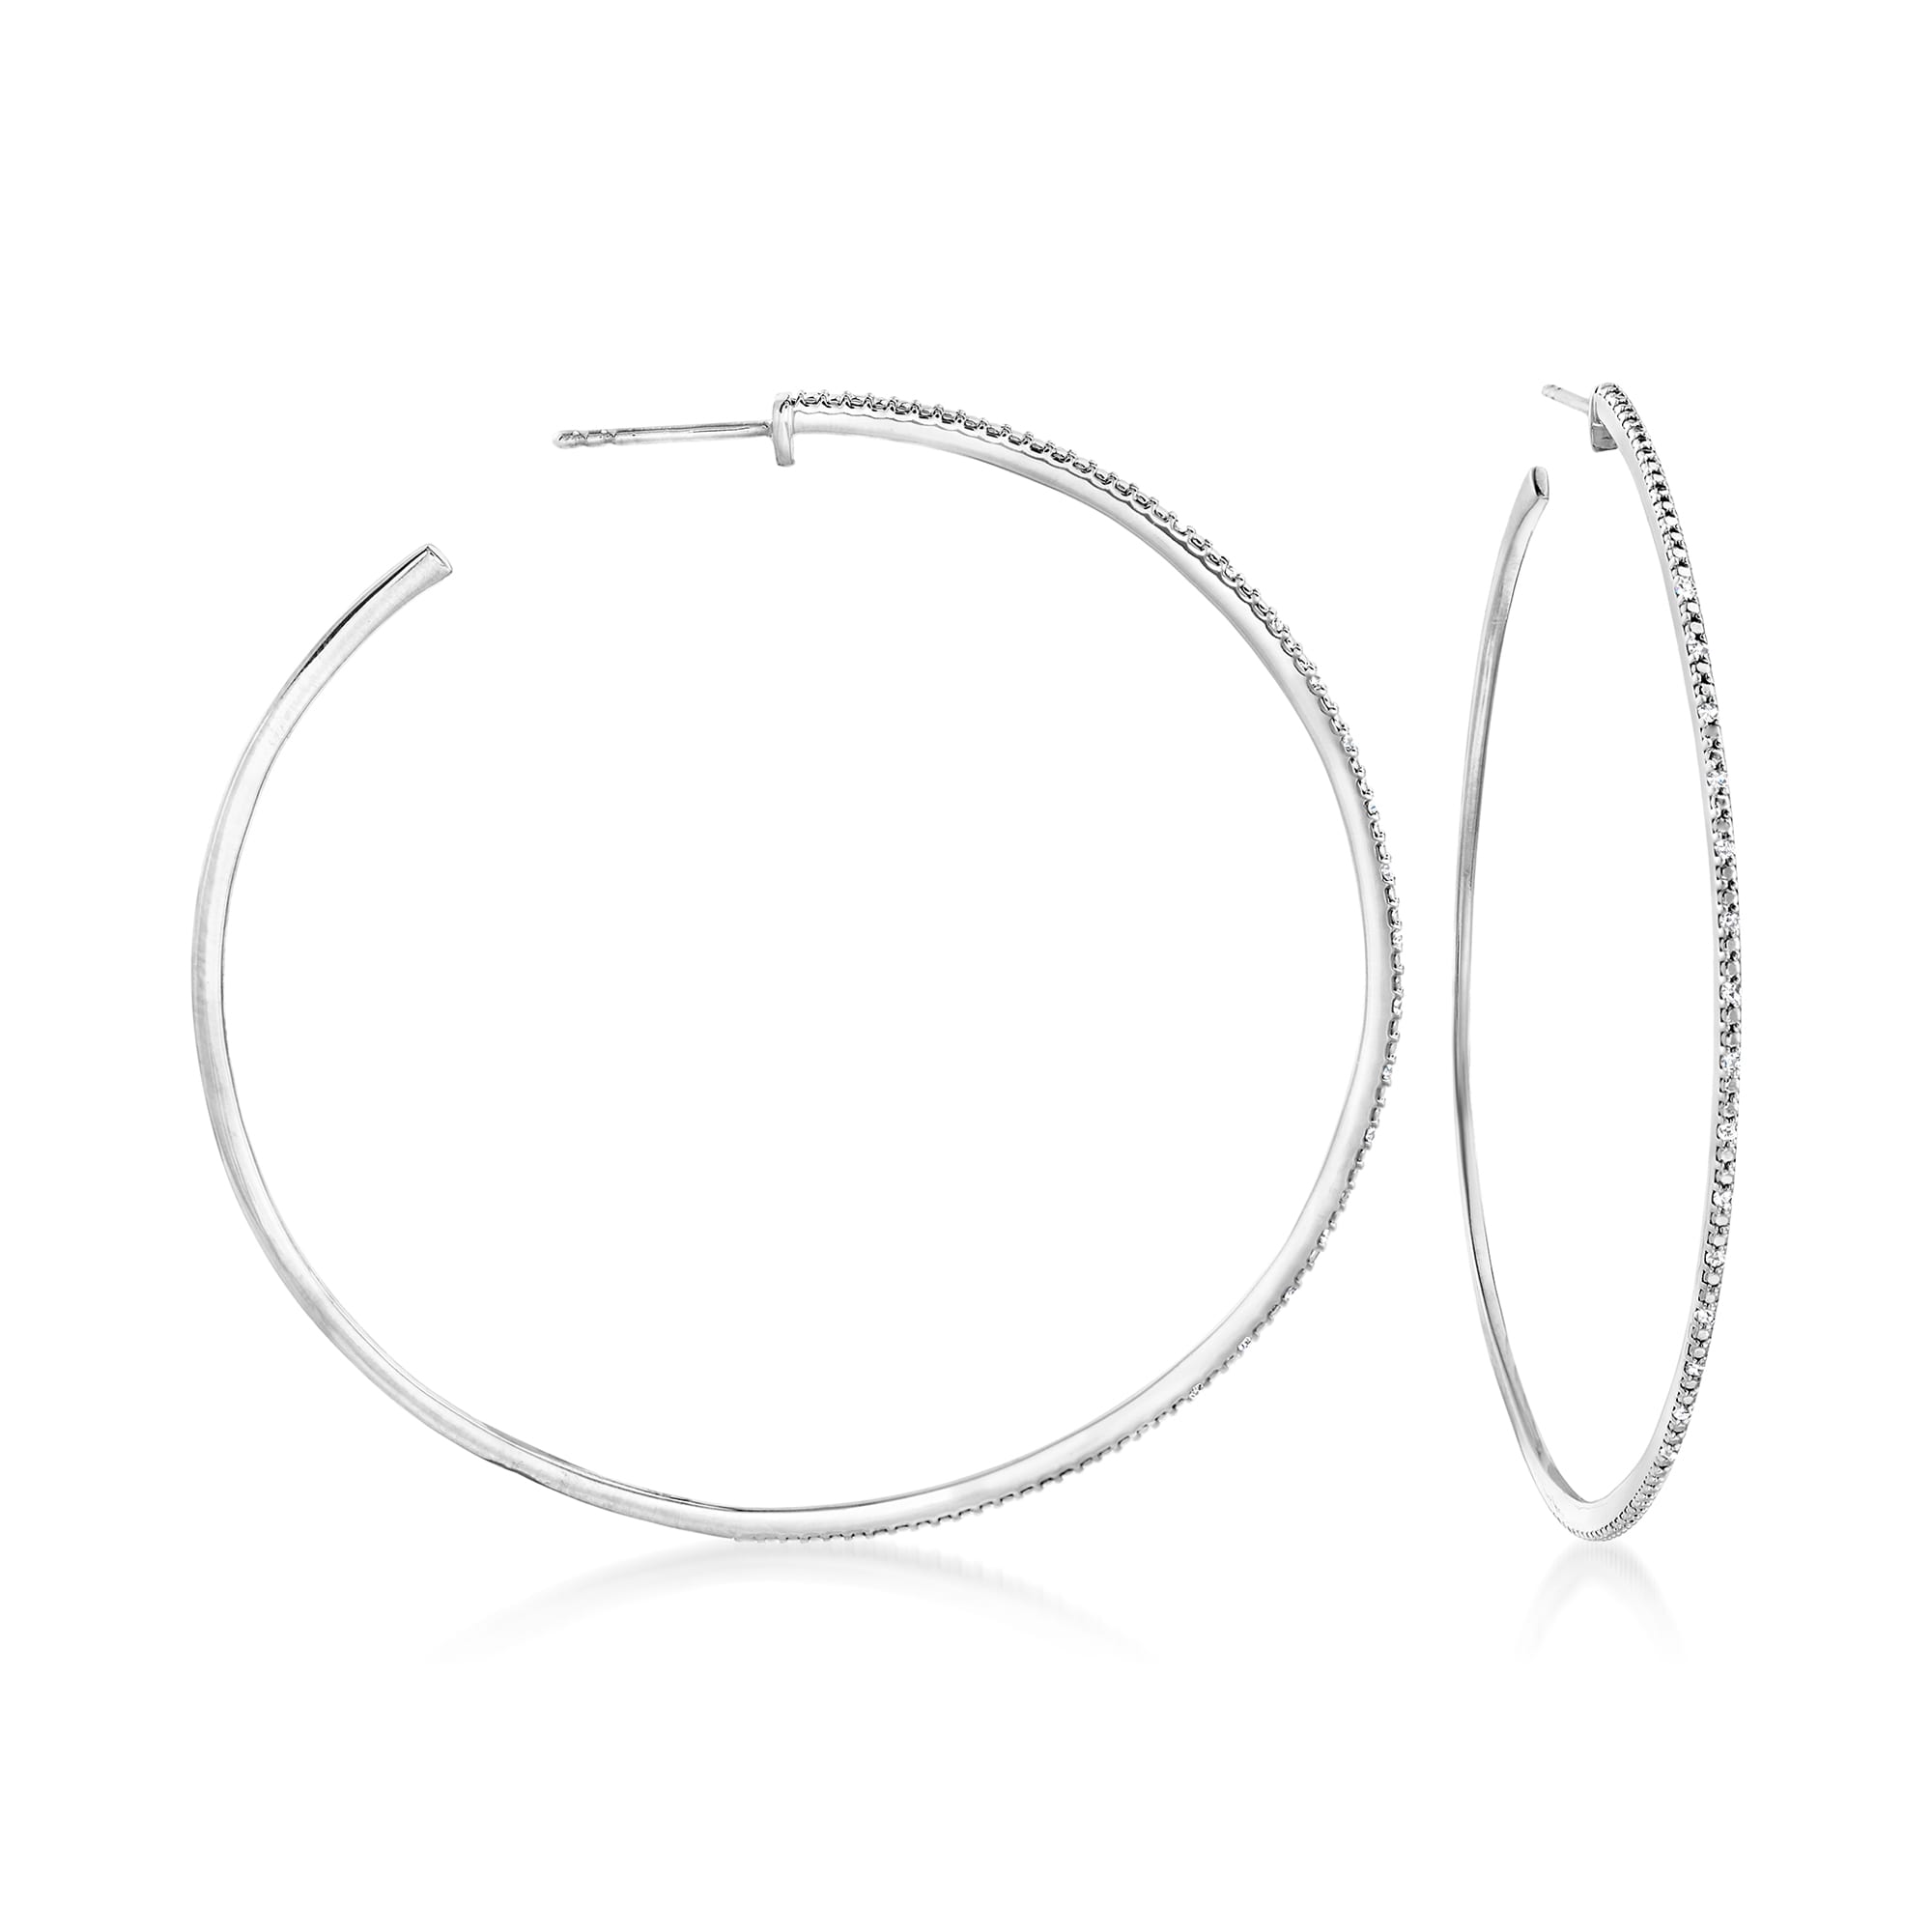 15 ct. t.w. Diamond Hoop Earrings in Sterling Silver. 2 1/8